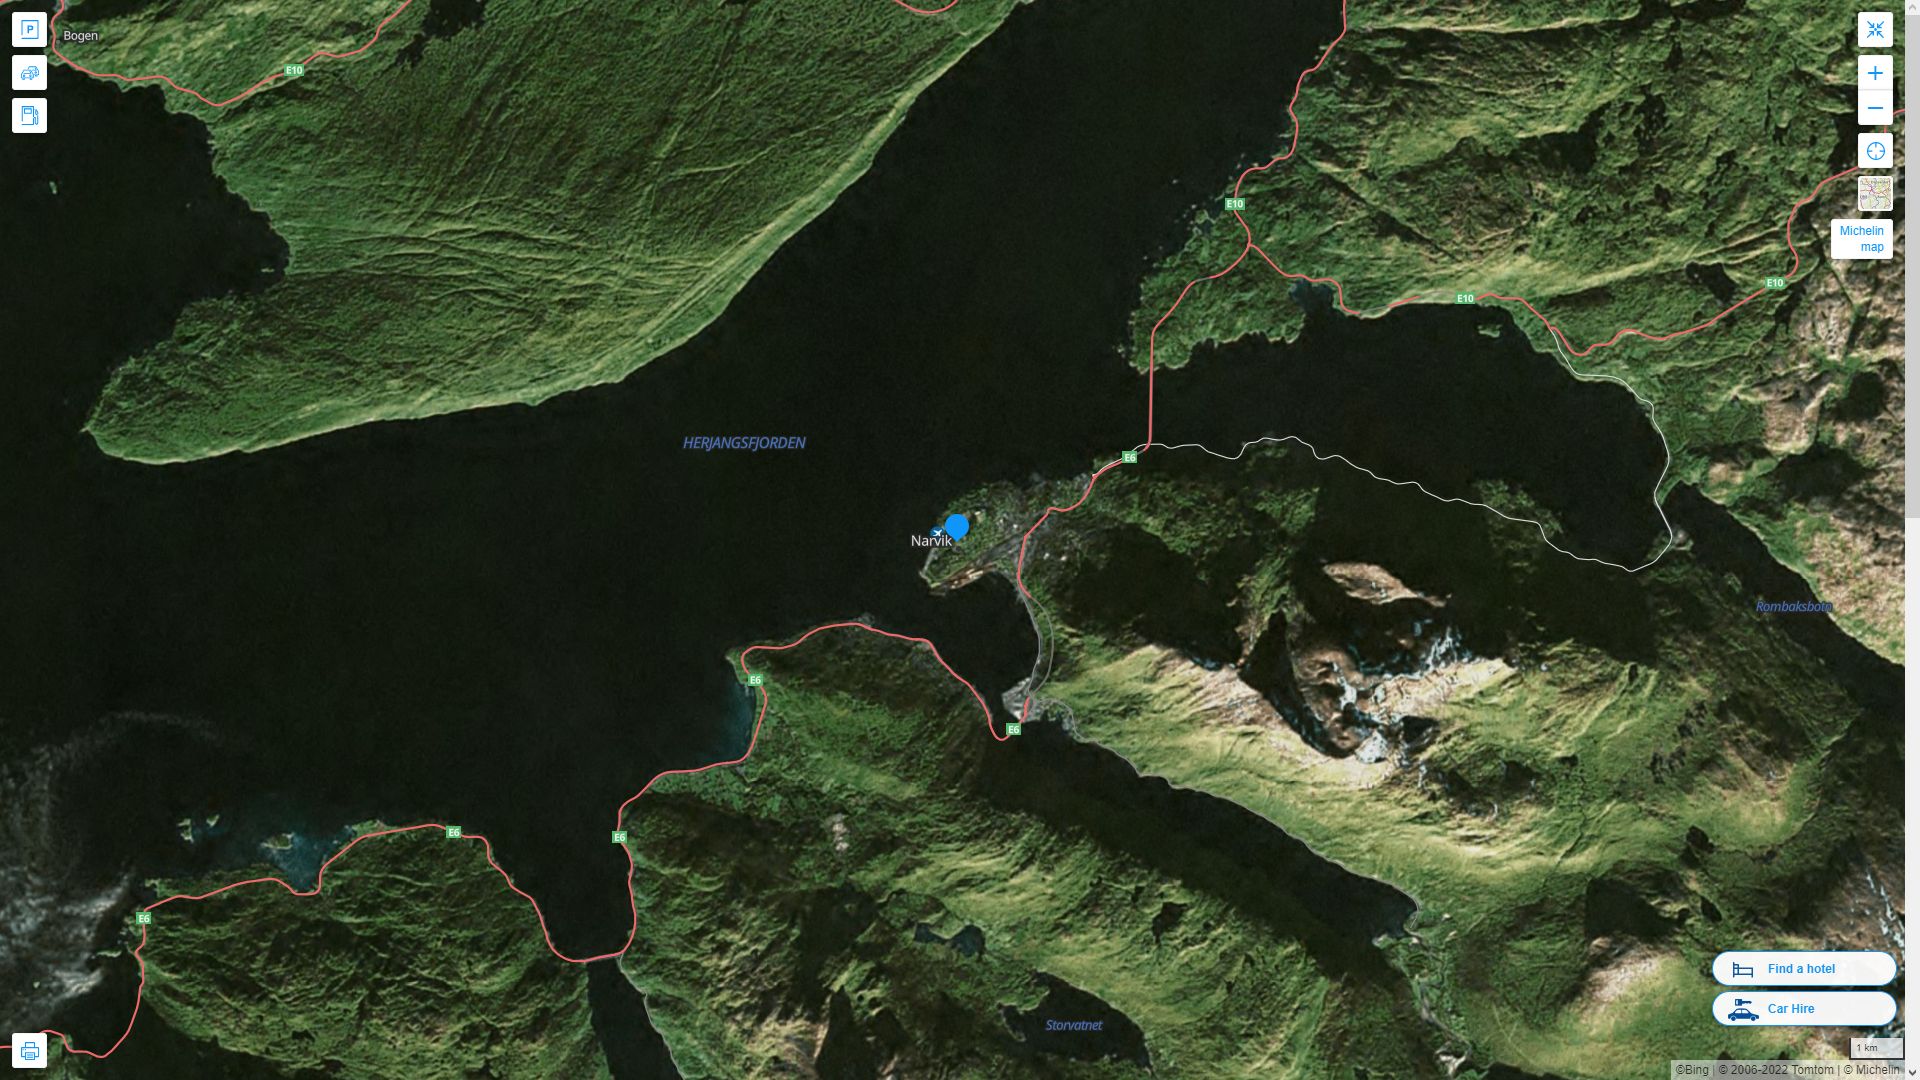 Narvik Norvege Autoroute et carte routiere avec vue satellite